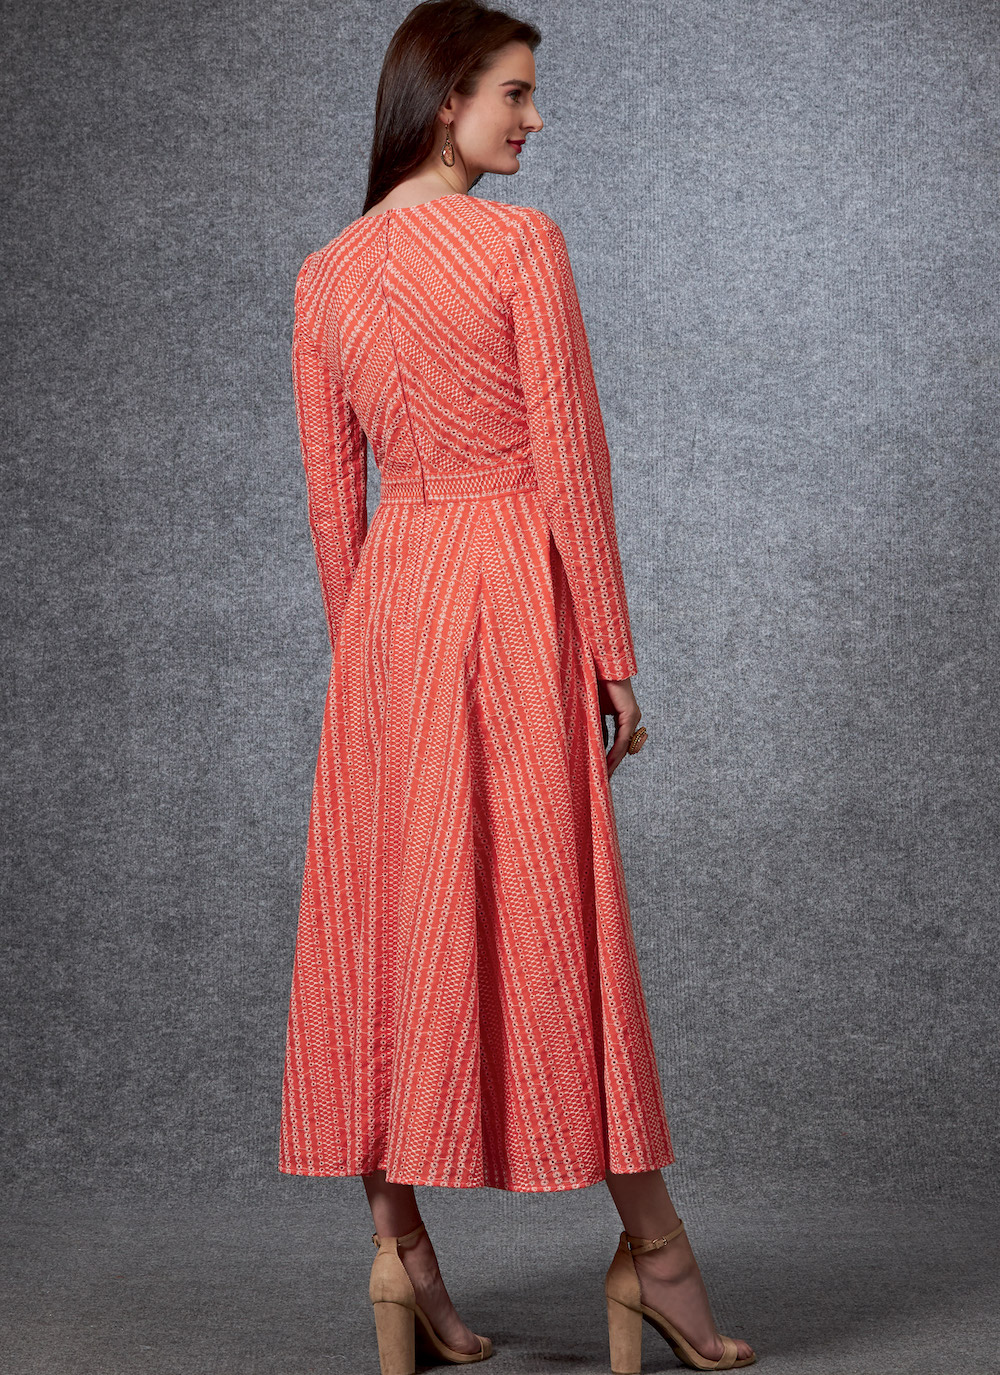 Vogue® Patterns Papierschnittmuster Damen Kleid V1672